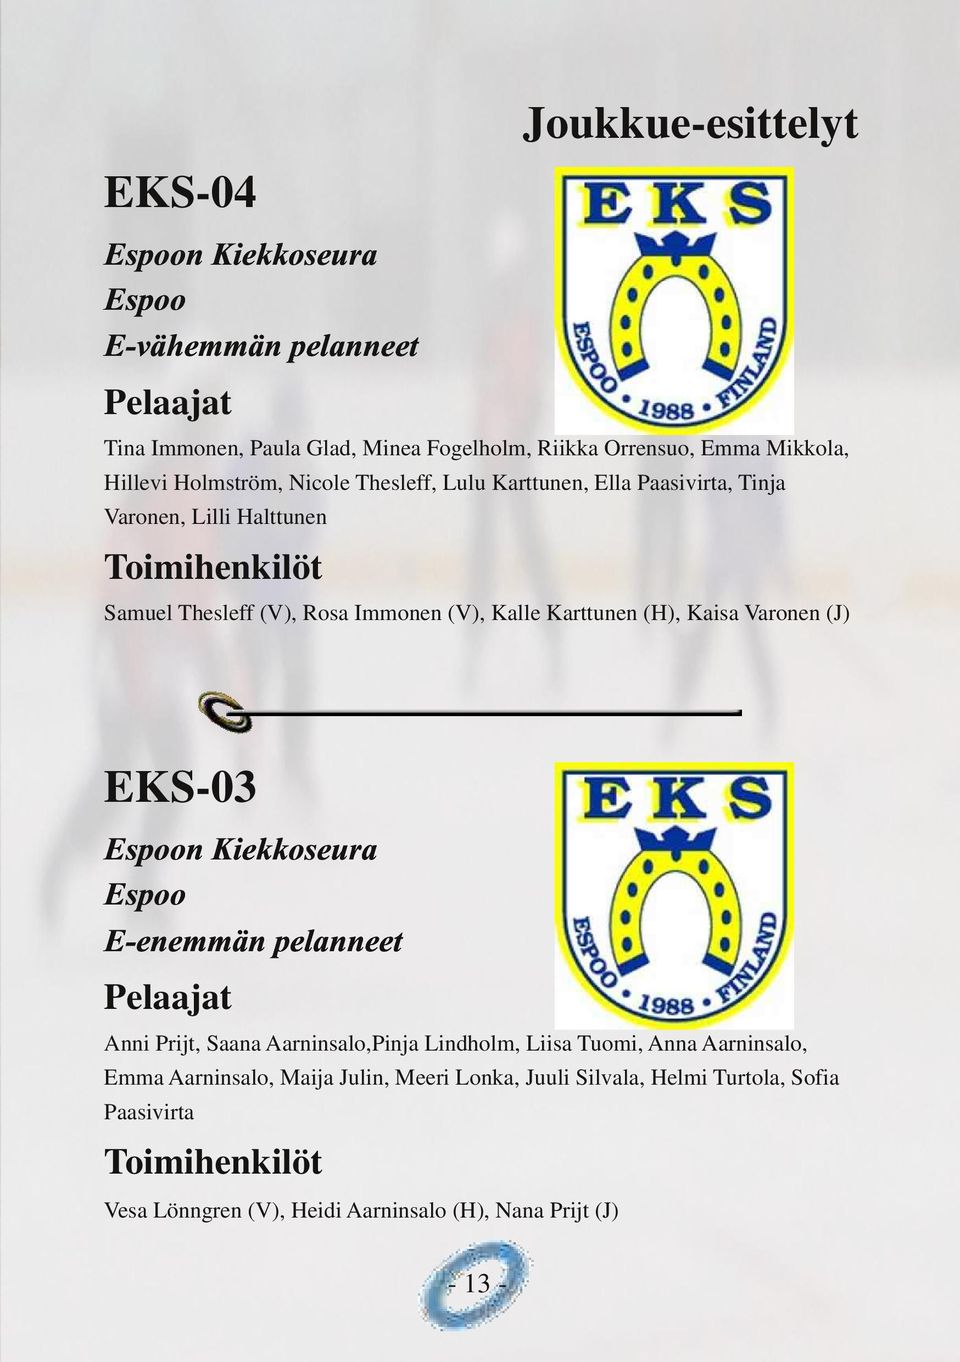 Karttunen (H), Kaisa Varonen (J) EKS 03 Espoon Kiekkoseura Espoo E-enemmän pelanneet Pelaajat Anni Prijt, Saana Aarninsalo,Pinja Lindholm, Liisa Tuomi, Anna